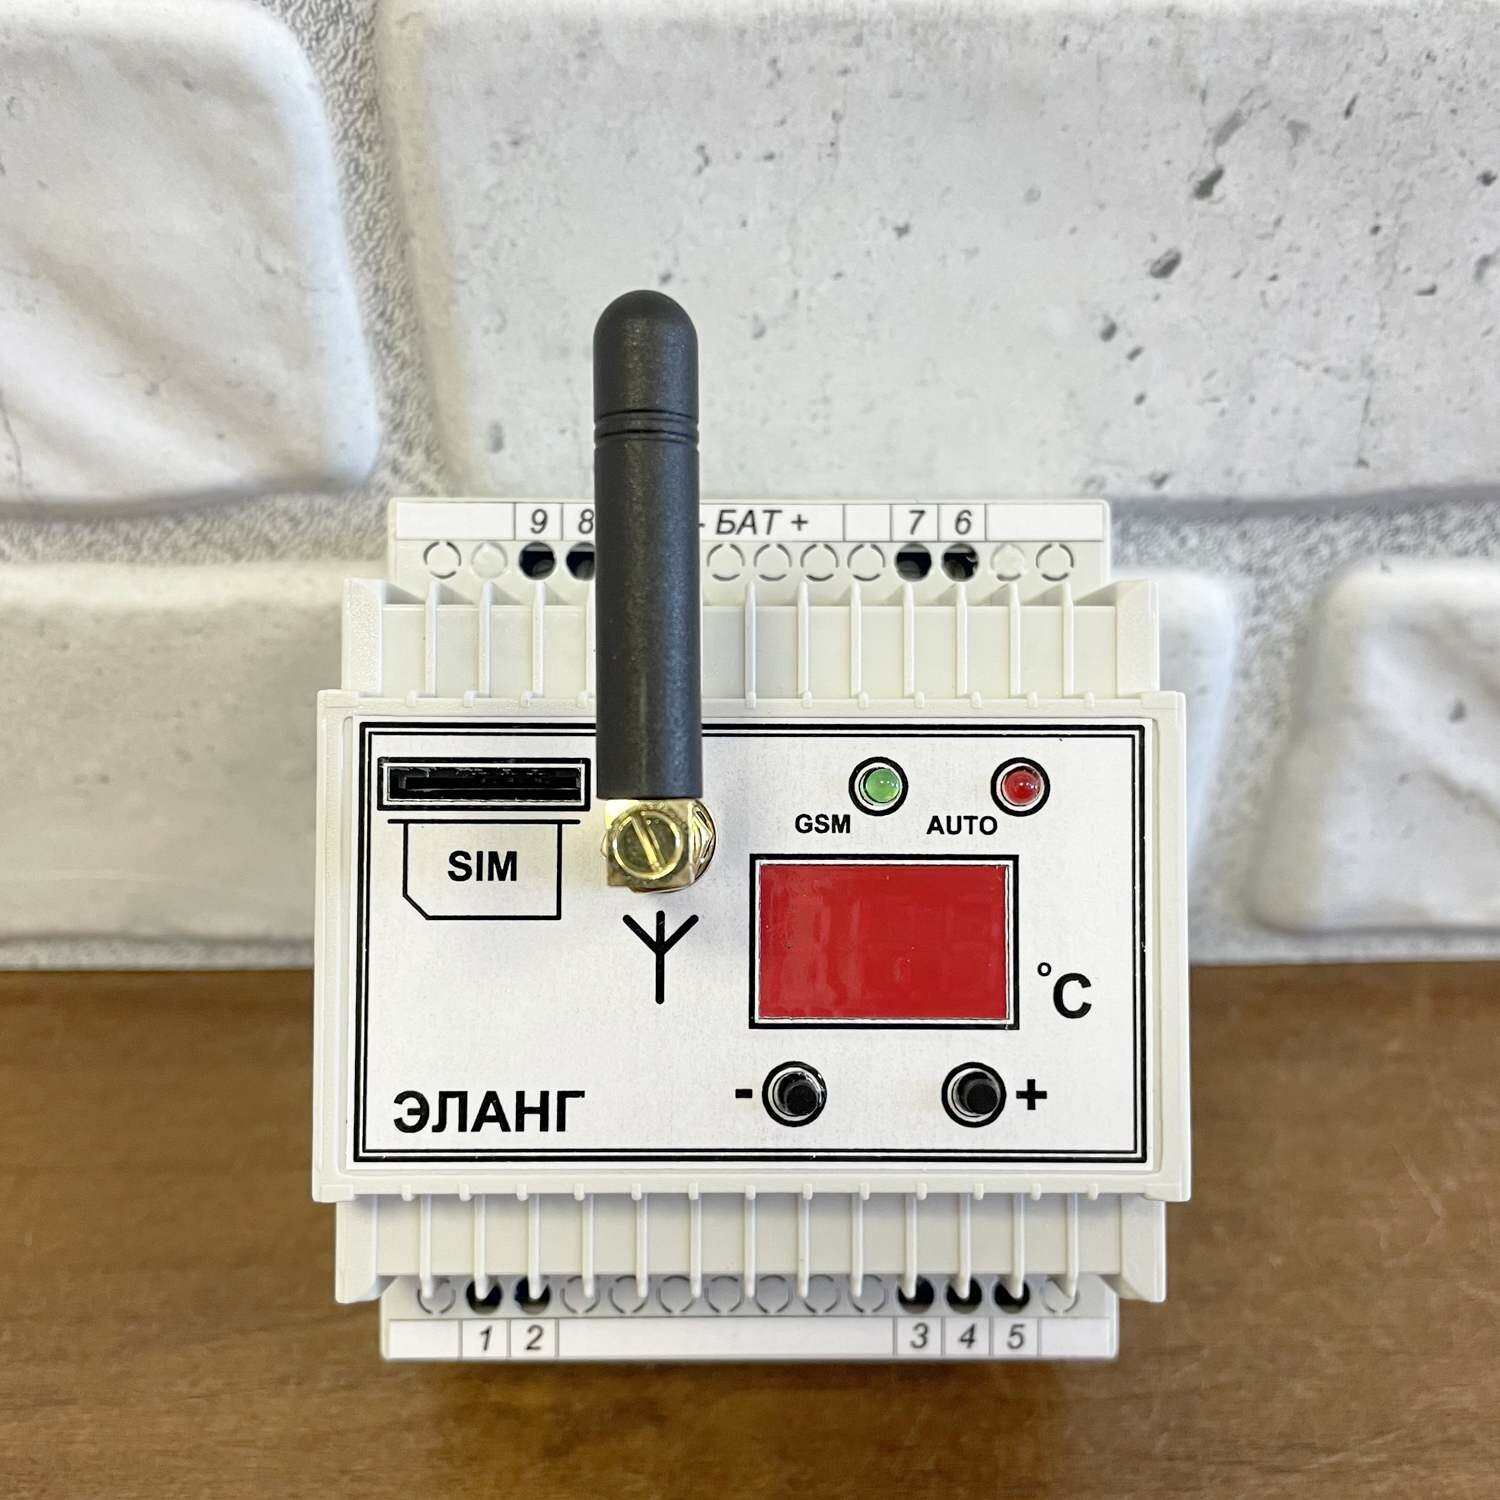 GSM реле ELANG Power Control Thermo v2.1 / Однофазное / Контроллер для управления питанием / Для поддержания заданной температуры / С контактным извещателем / Установка на DIN рейку